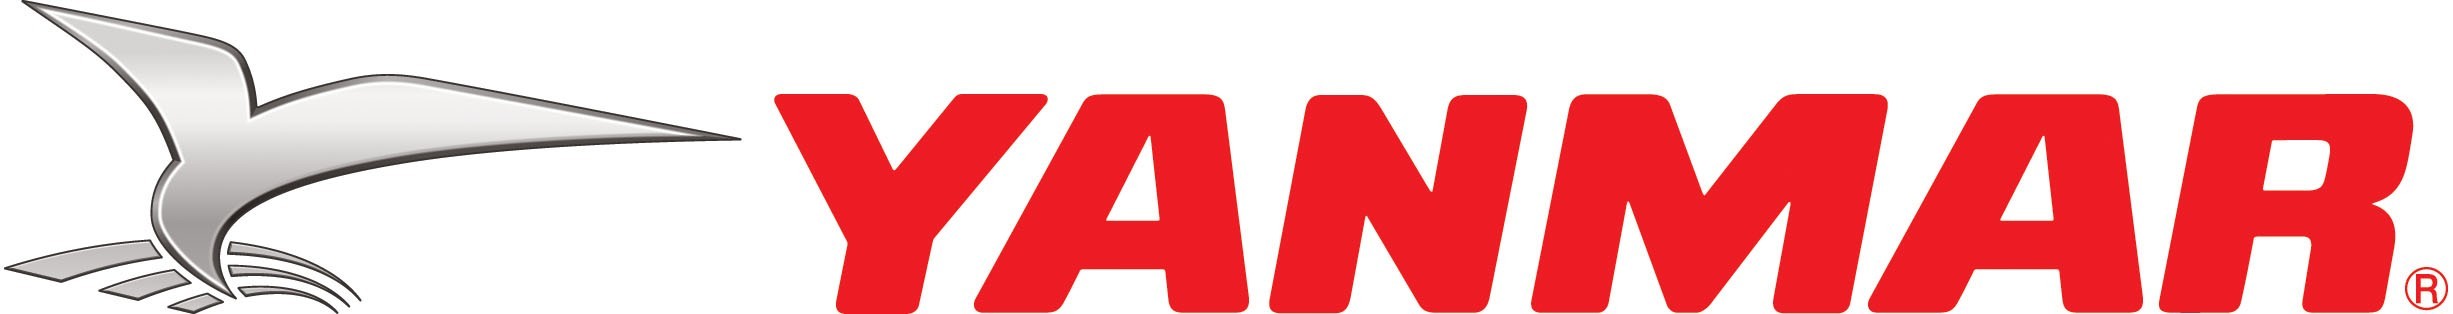 YANMAR Logo